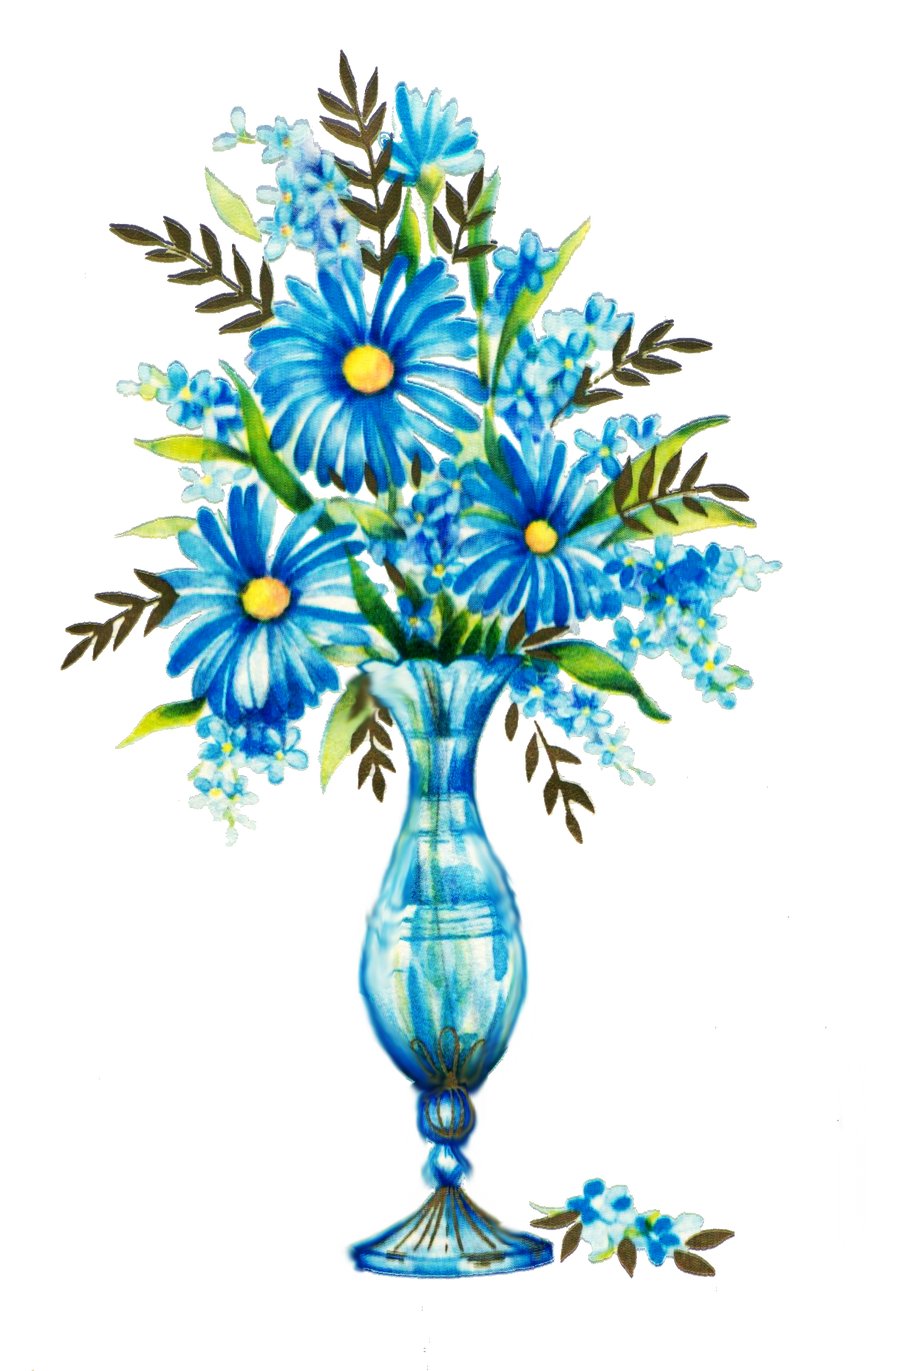 Blue flowers by jinifur on DeviantArt